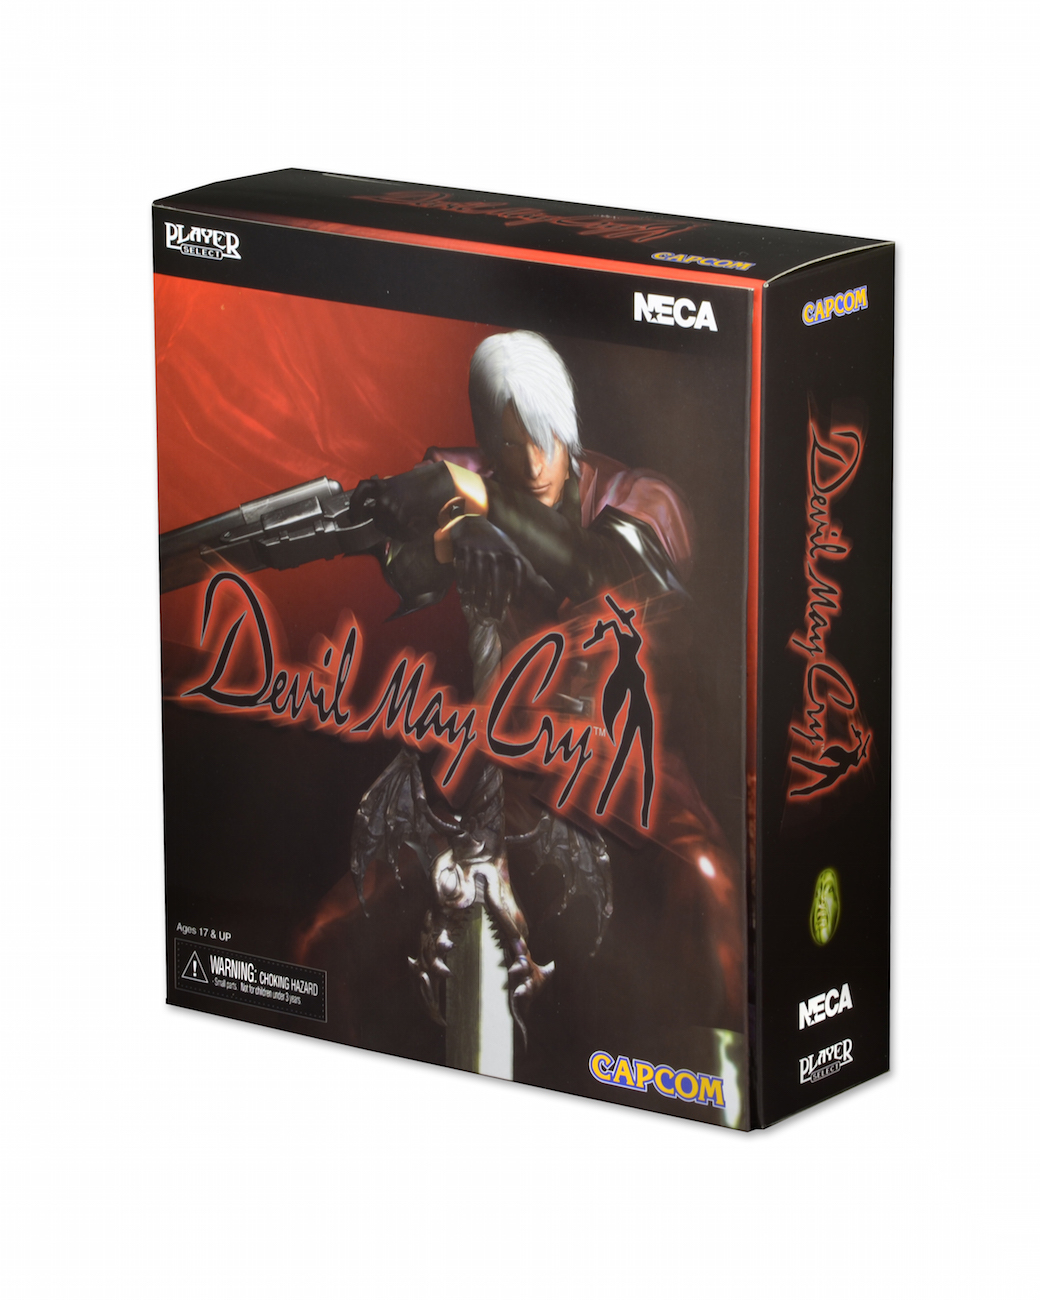 DMC1 Dante action figure by NECA : r/DevilMayCry